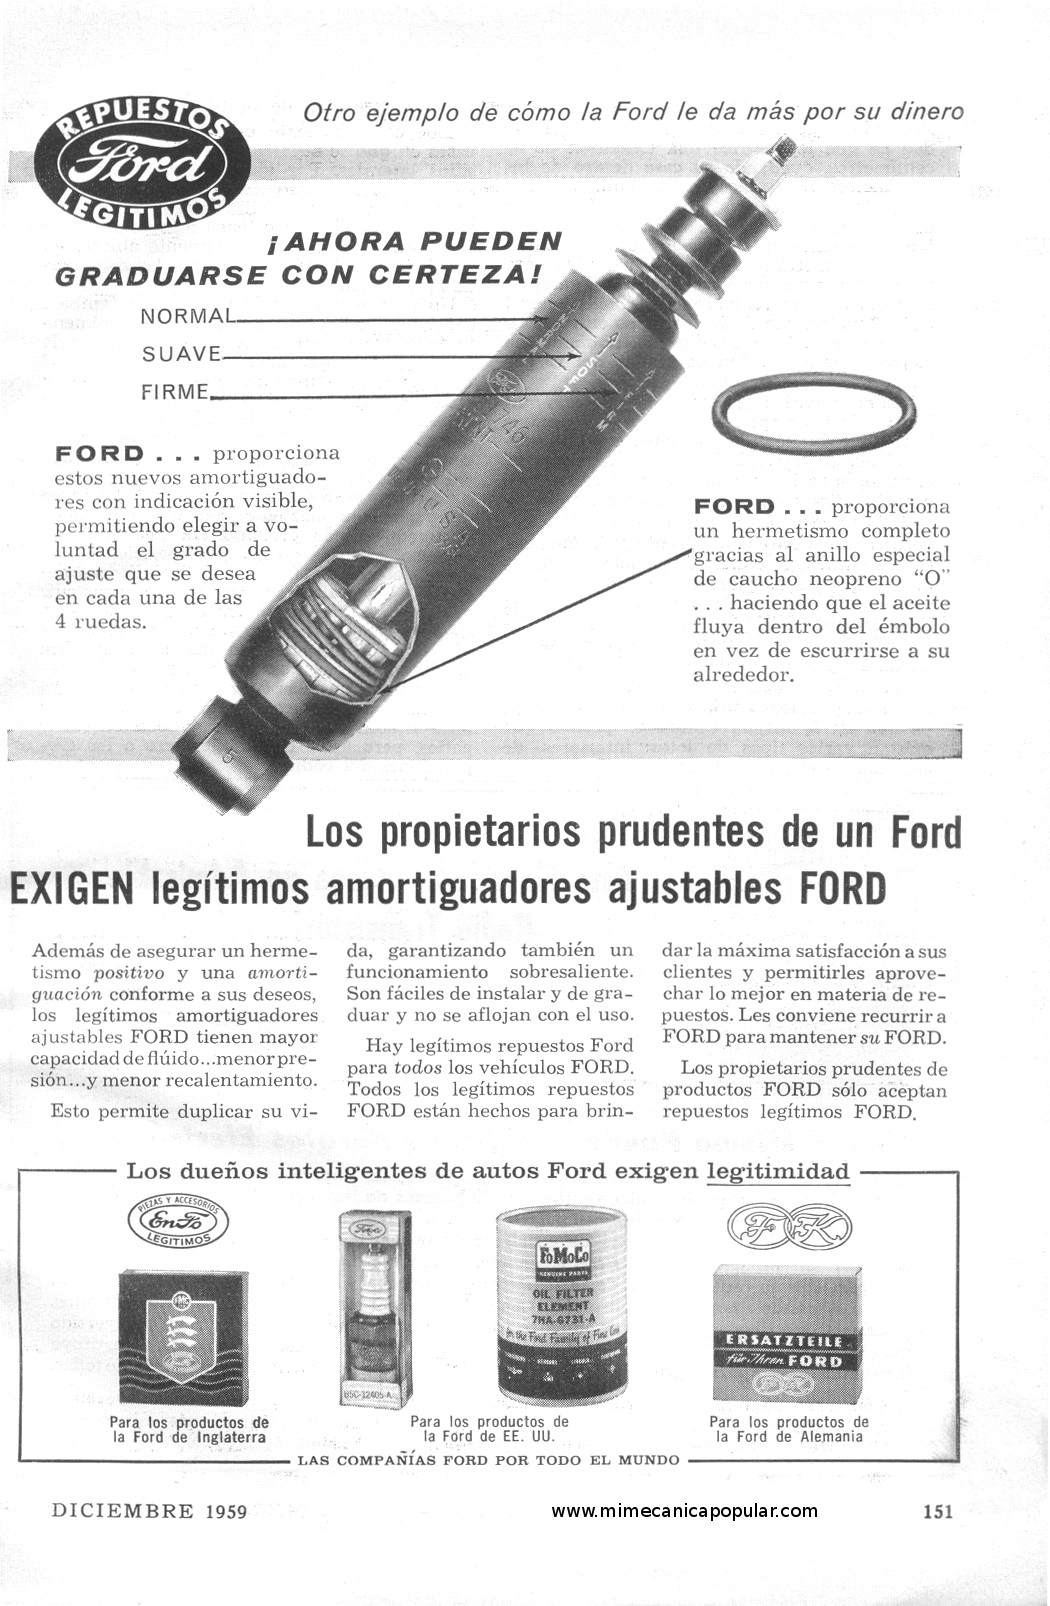 Publicidad - Repuestos Legítimos Ford - Diciembre 1959